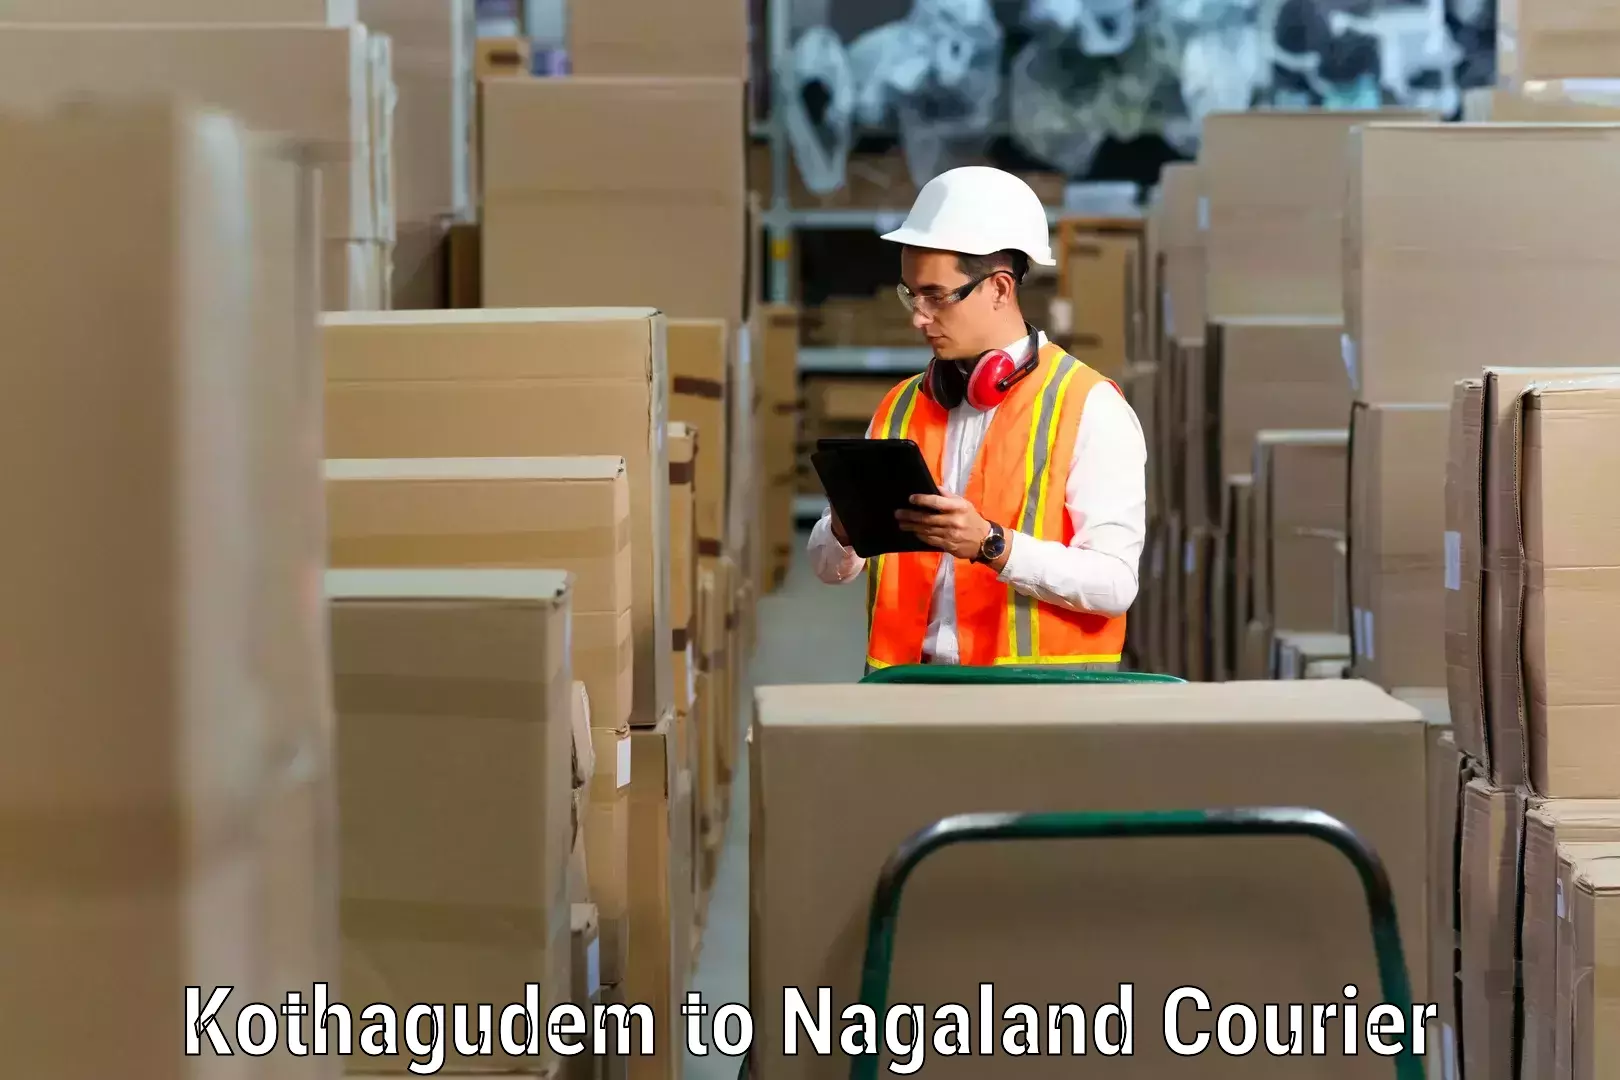 Furniture relocation experts Kothagudem to NIT Nagaland